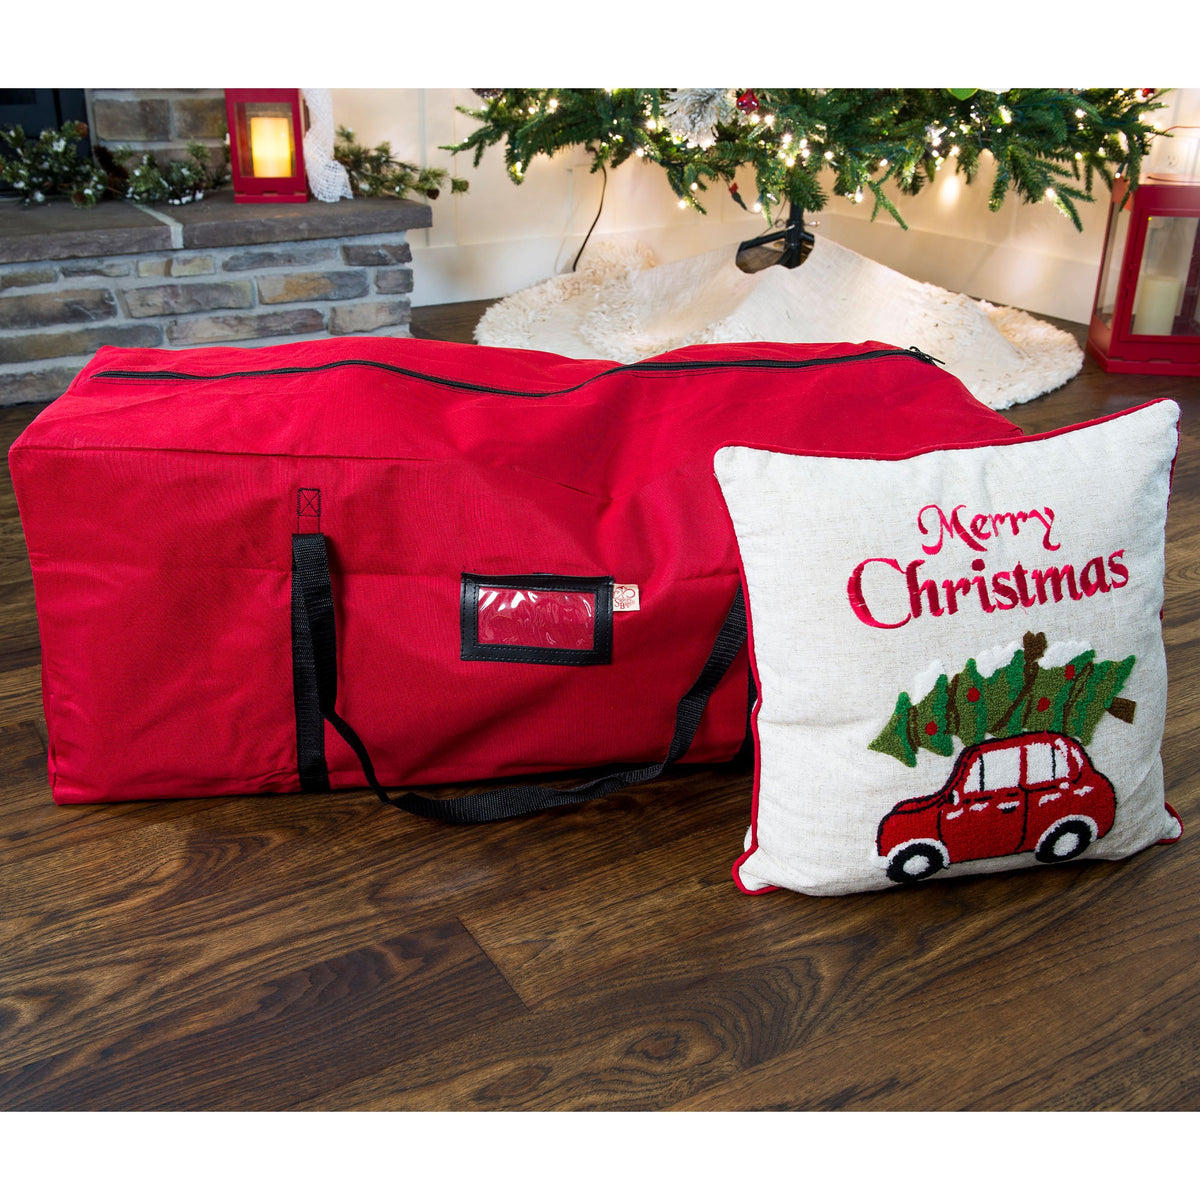 90cm Multi Purpose Storage Bag - My Christmas